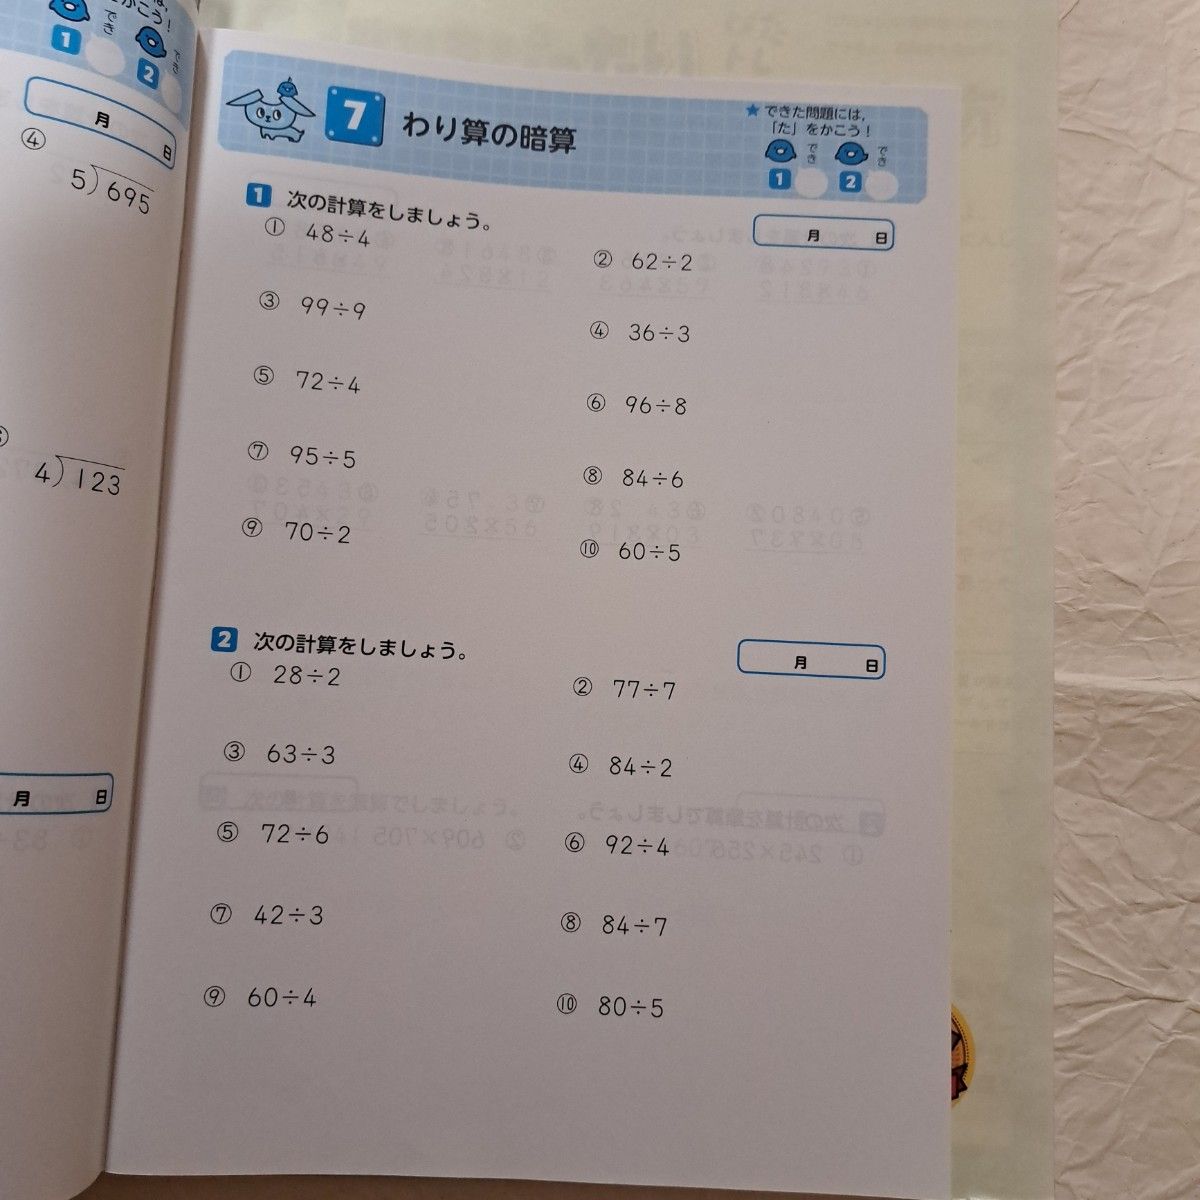 教科書ぴったりトレーニング算数小学4年 東京書籍版